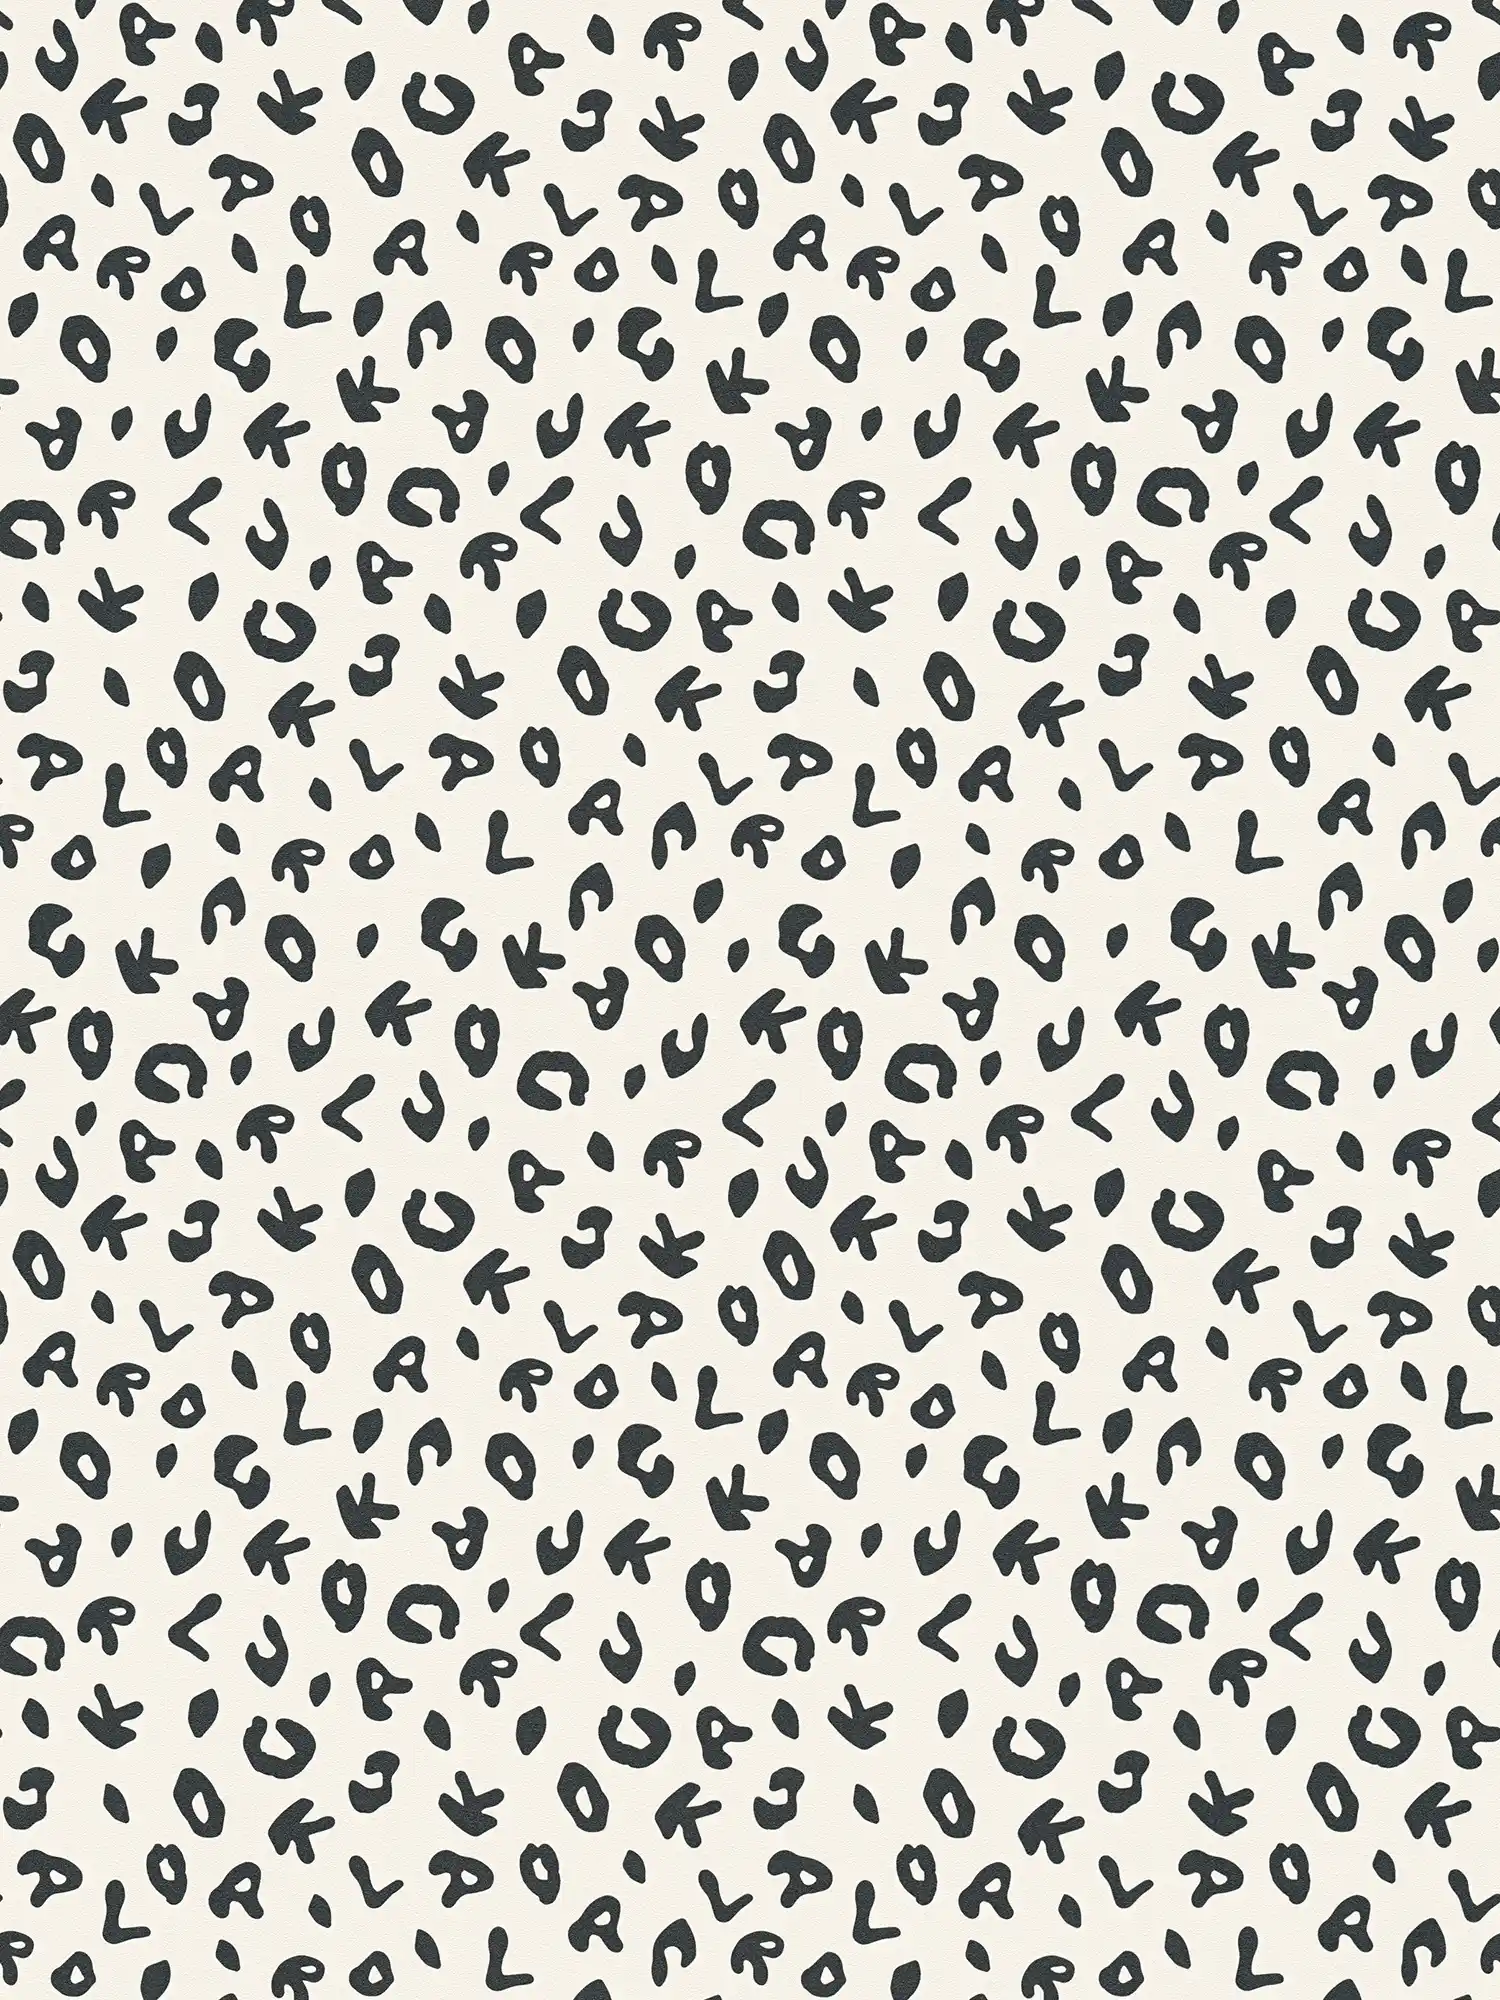             Karl LAGERFELD Papier peint style imprimé léopard - noir, blanc
        